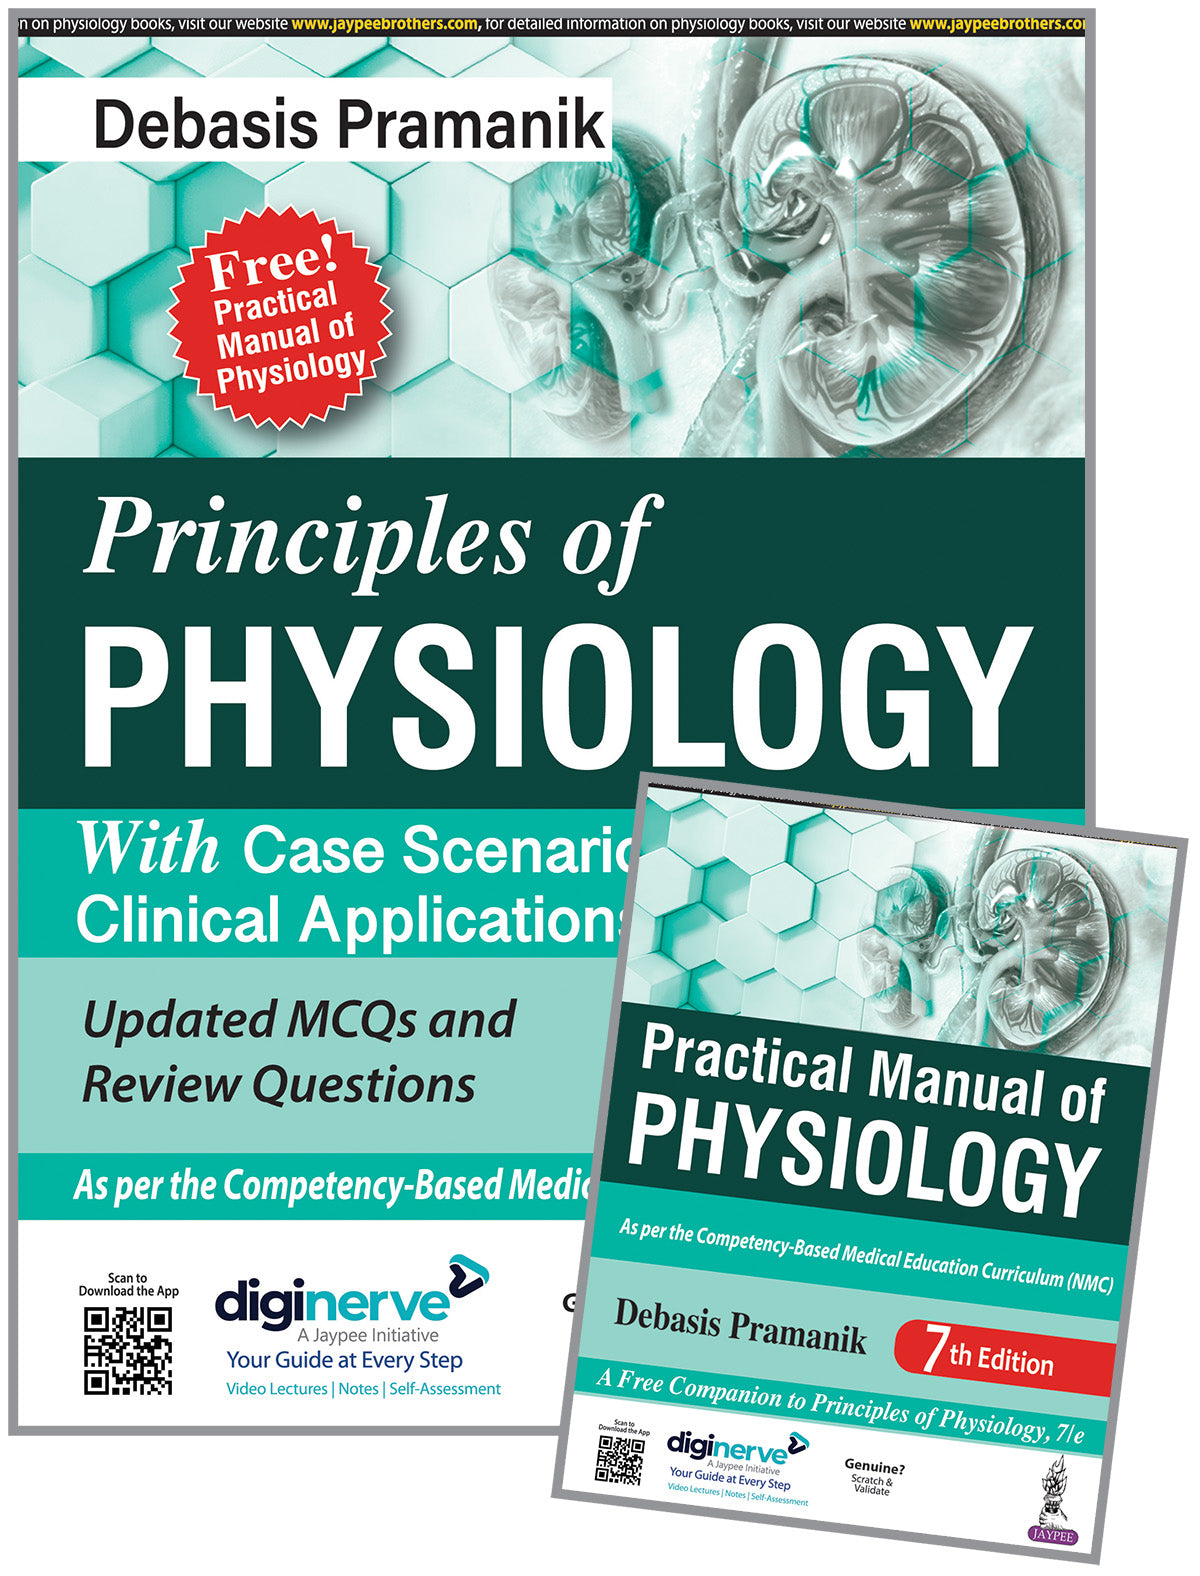 PRINCIPLES OF PHYSIOLOGY (FREE! PRACTICAL MANUAL OF PHYSIOLOGY),7/E,DEBASIS PRAMANIK